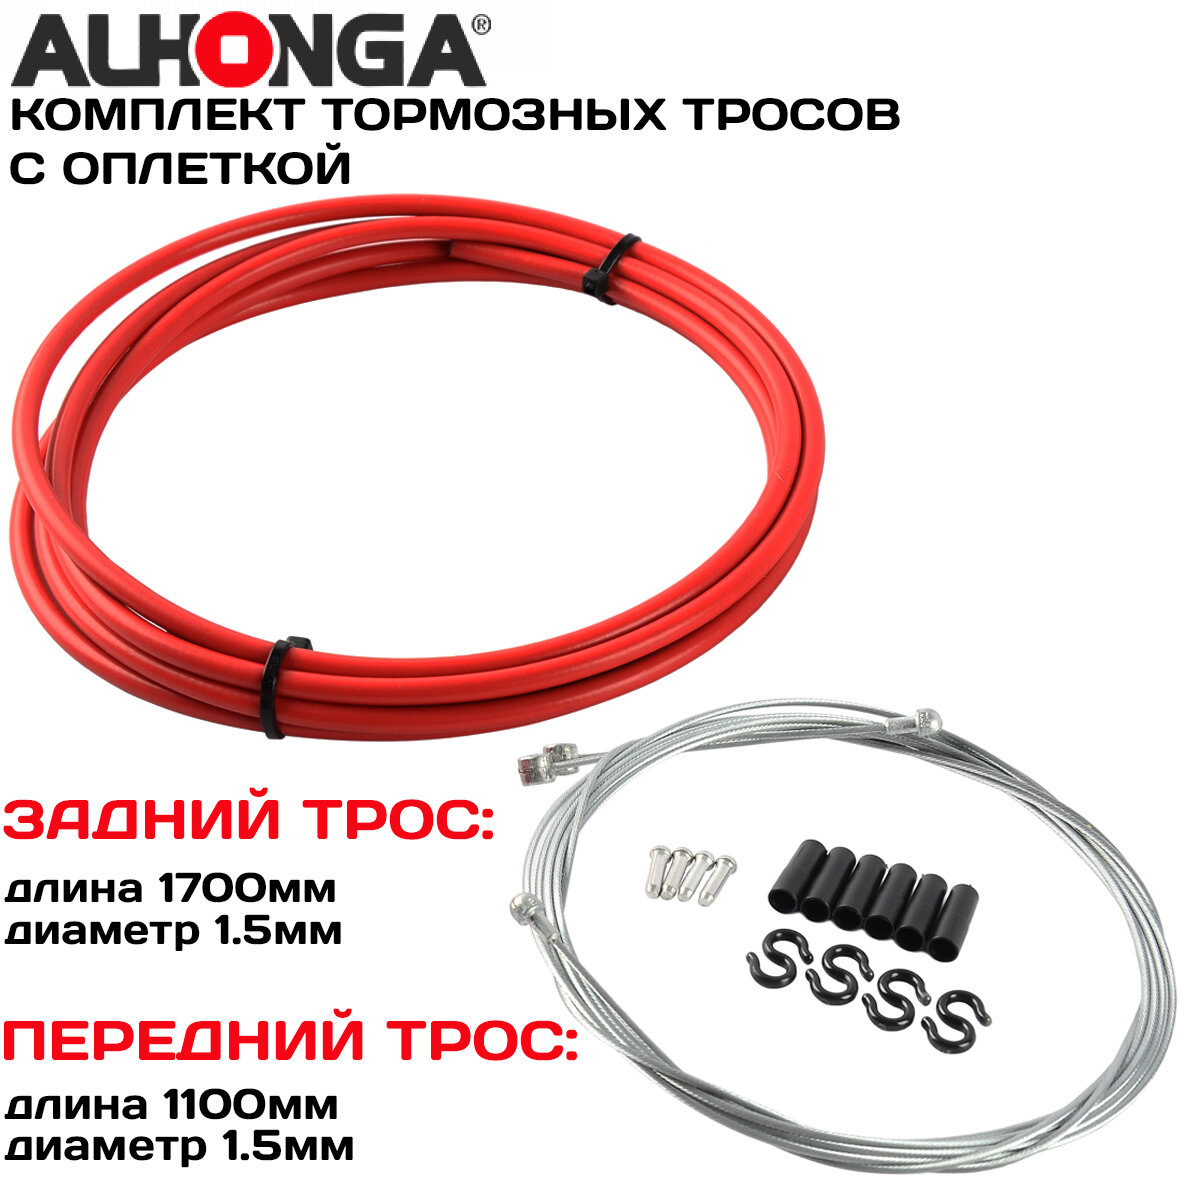 Комплект тормозных тросов (2шт) с универсальной головкой Alhonga МТВ/ROAD, с оплеткой, концевики оплетки и троса, красный